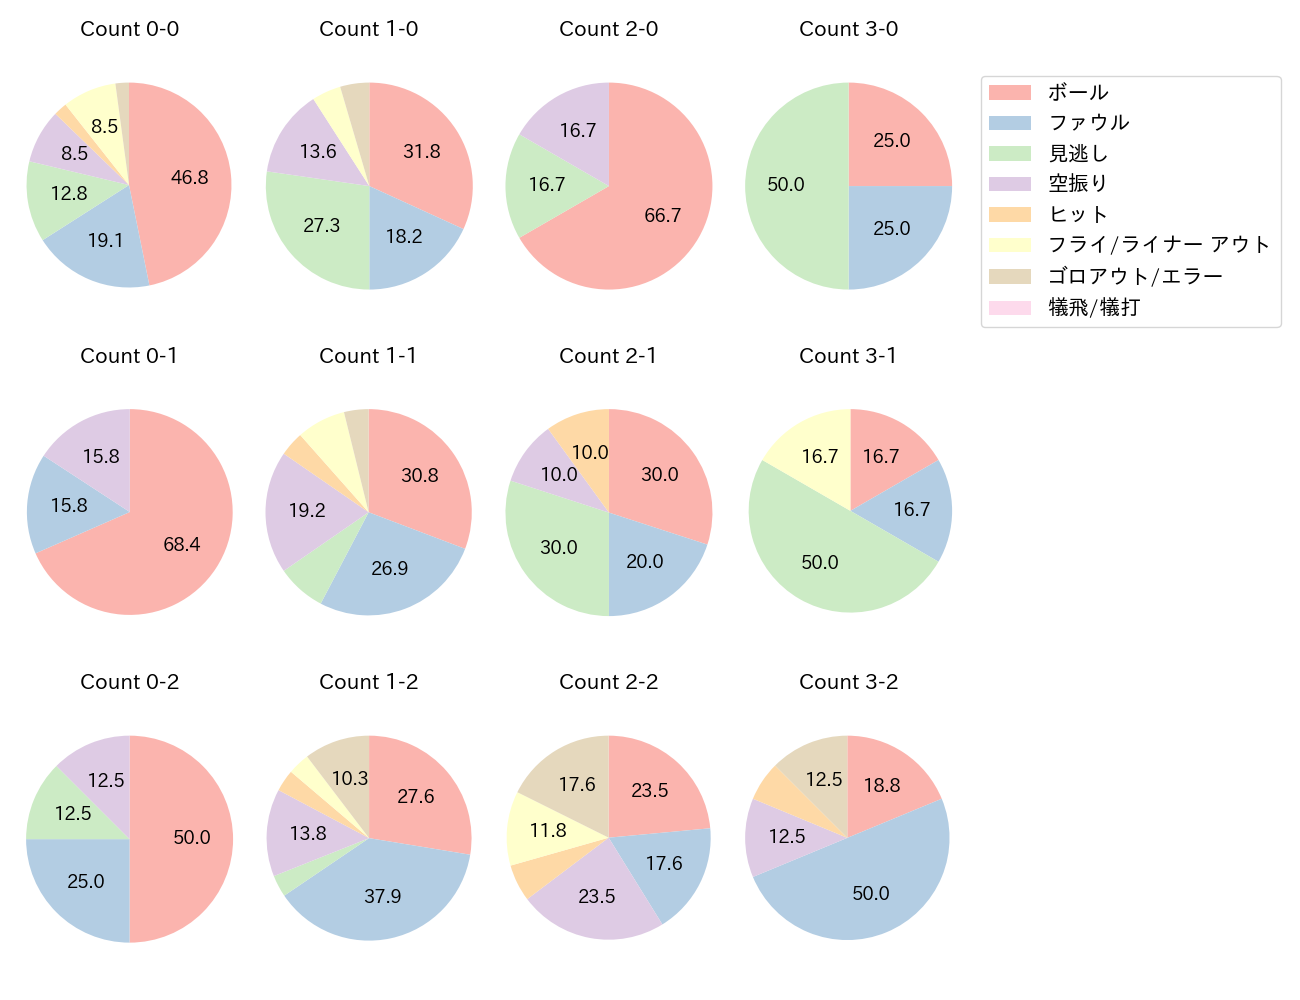 杉本 裕太郎の球数分布(2021年7月)